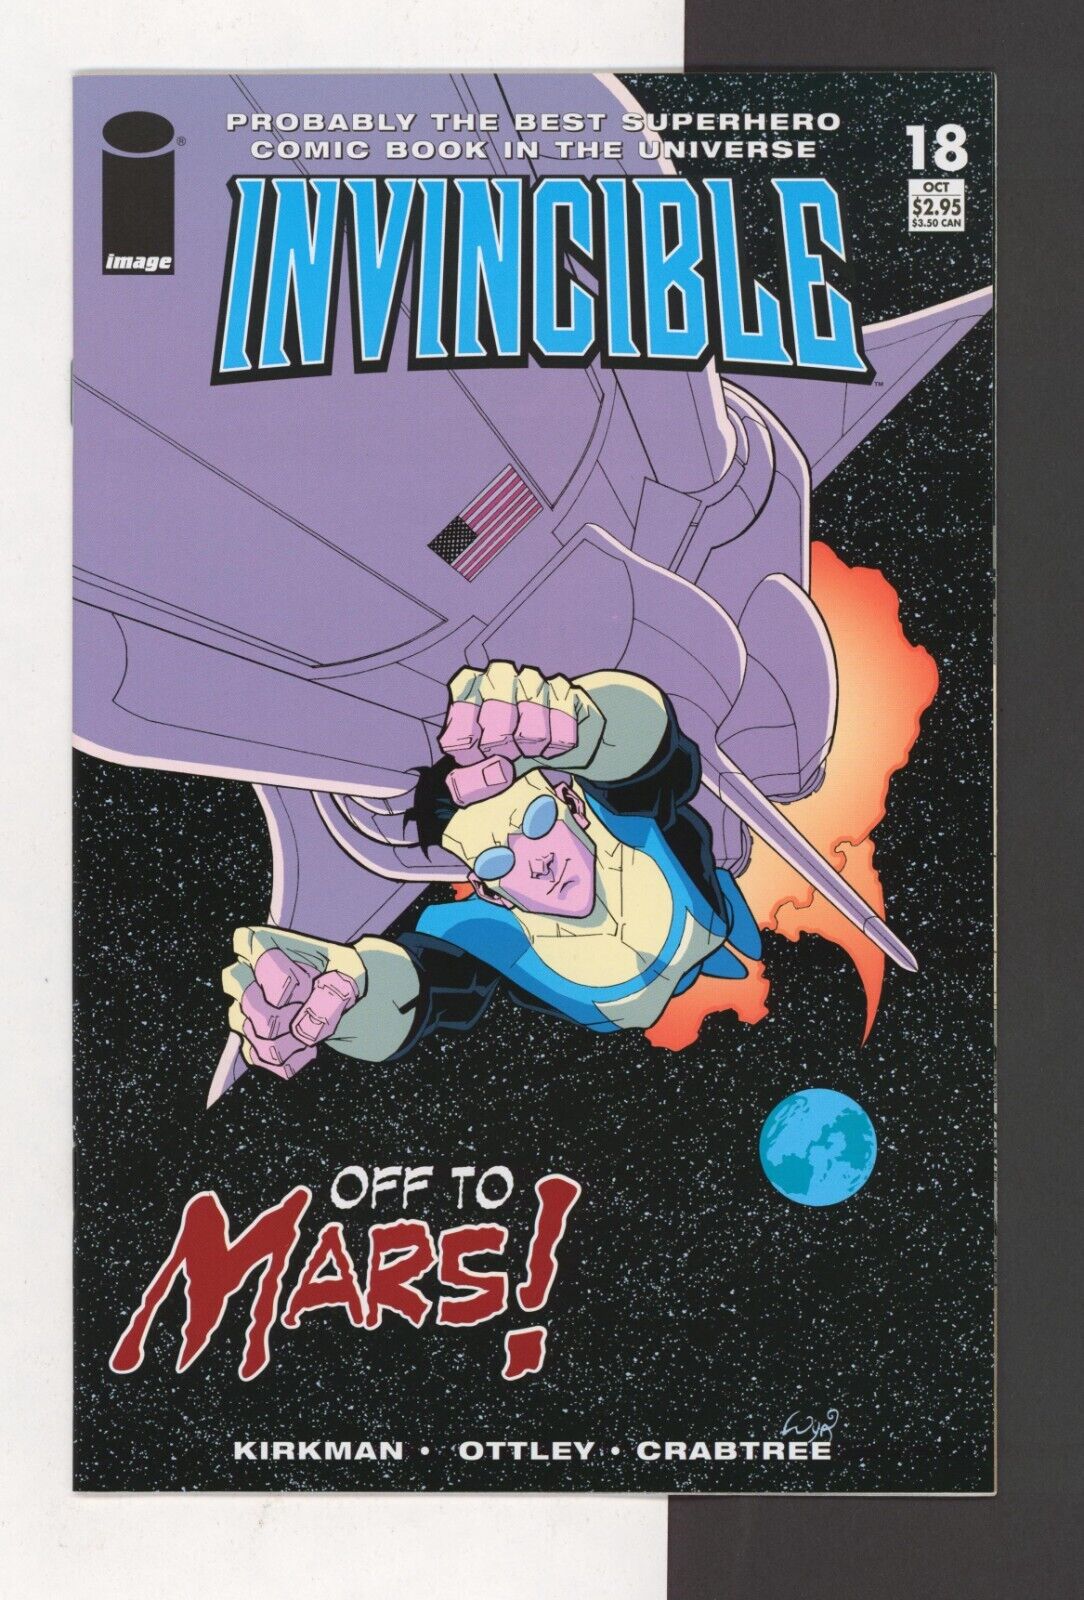 Invincible Image Comics You Pick 0 - 144 KEYS 5 8 9 12 16 18 19 20 25 26 61 14